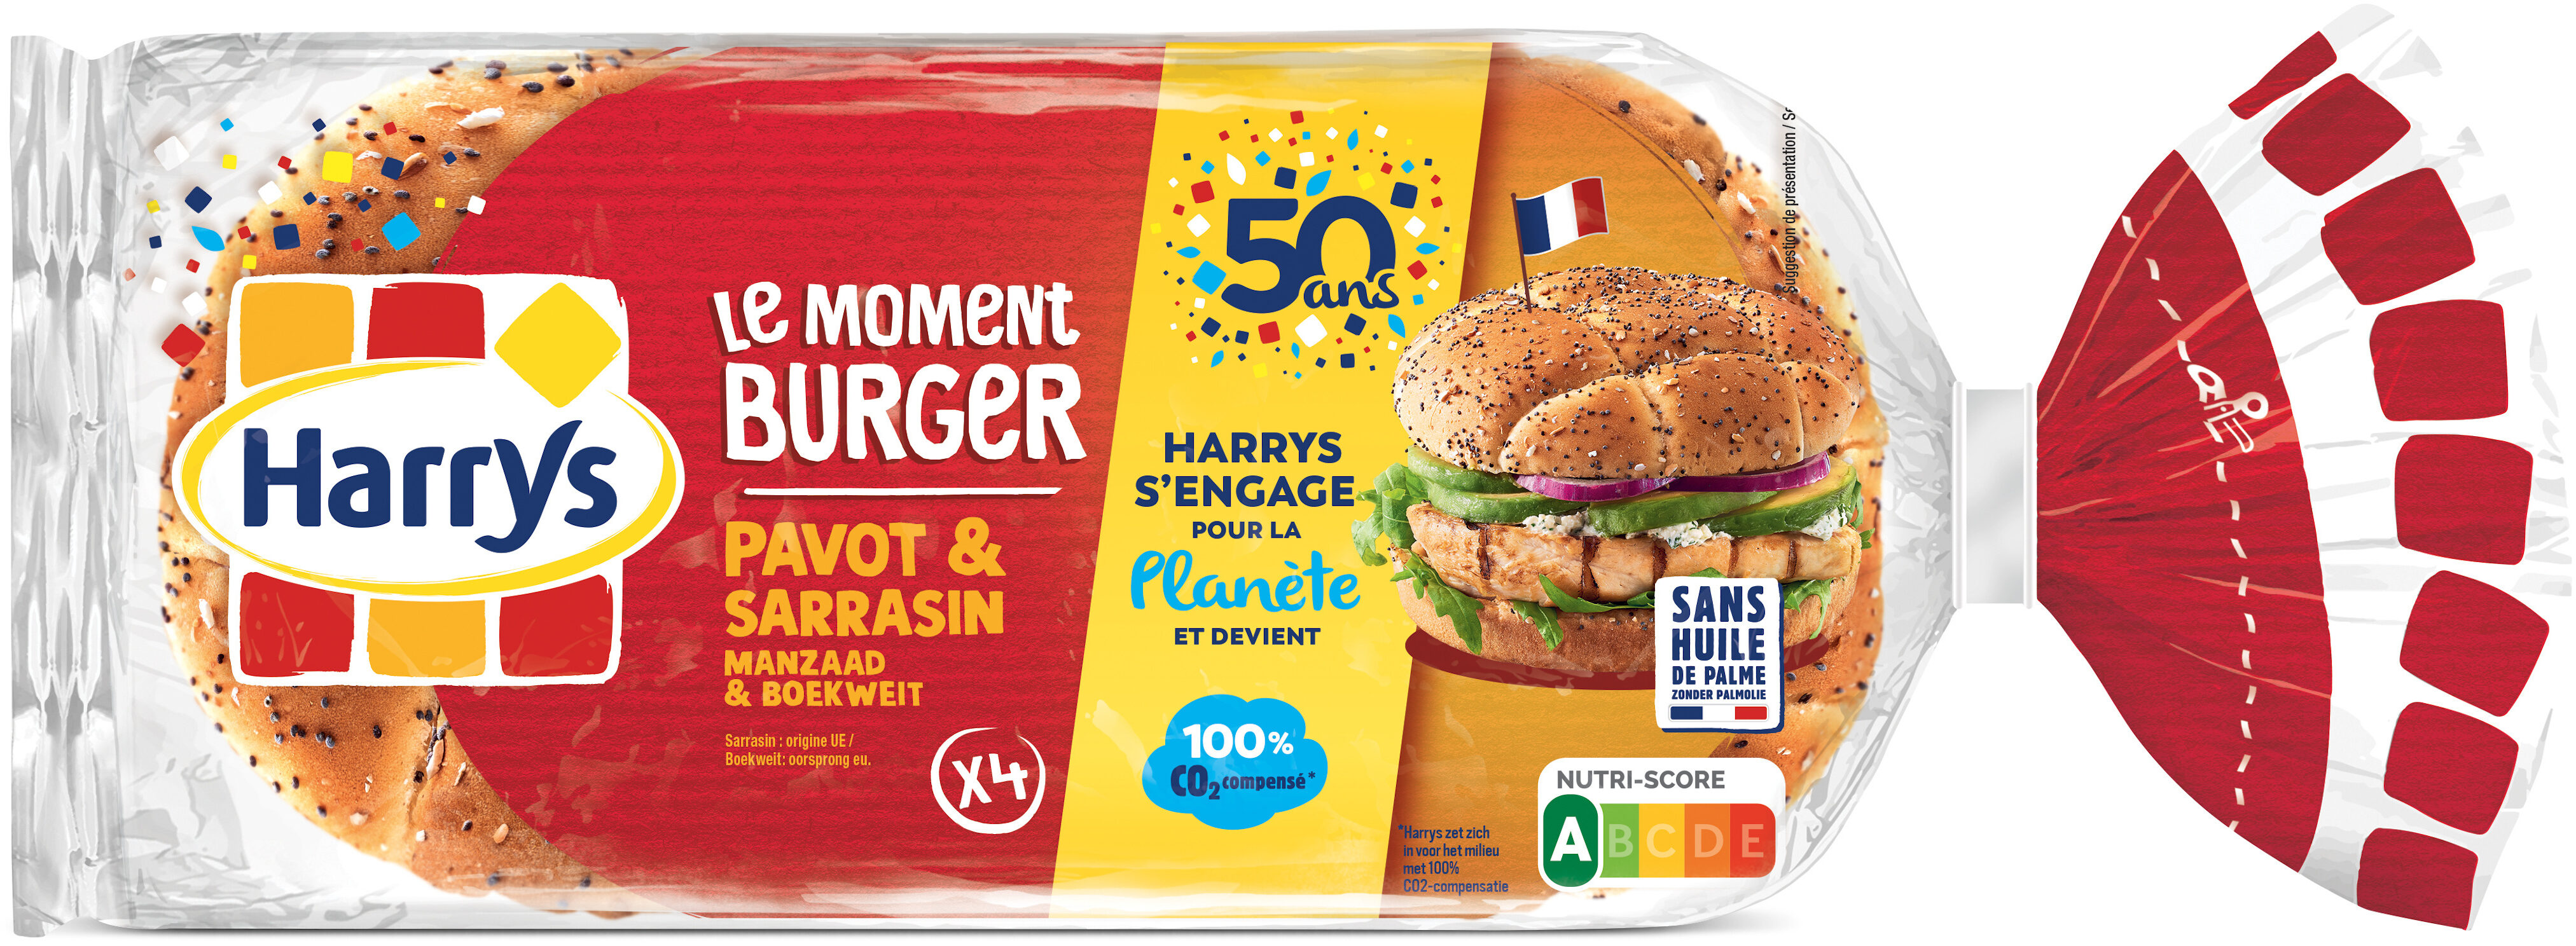 Burger pavot sarrasin - Product - fr